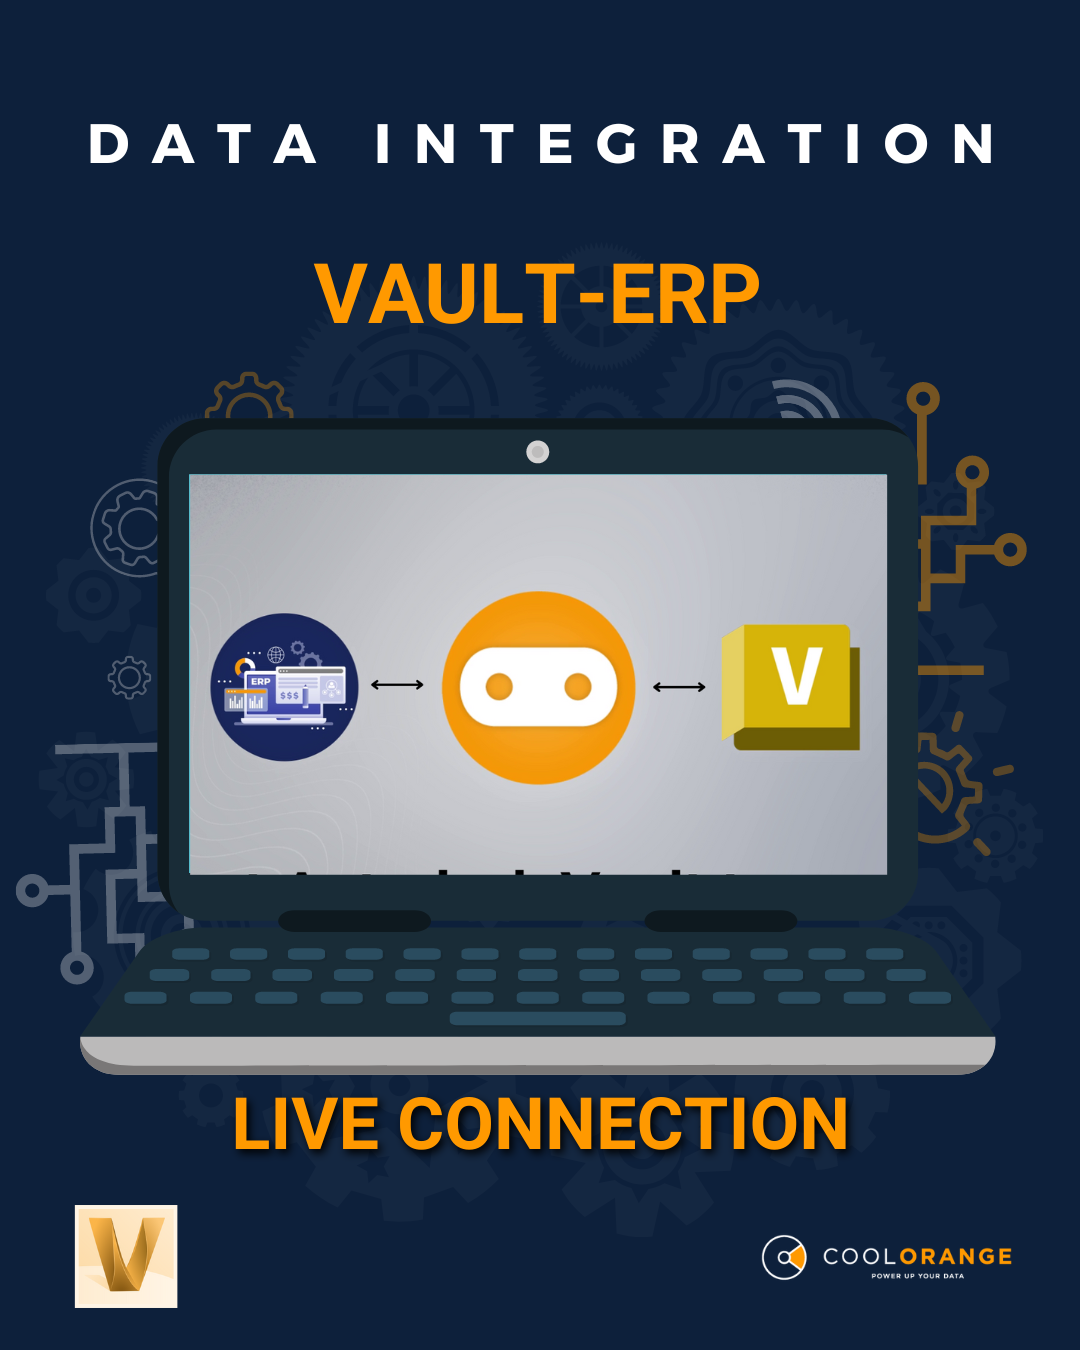 Datenintegration zwischen Vault und ERP: Eine Geschichte vom Entwurf bis zur Produktion - Teil III